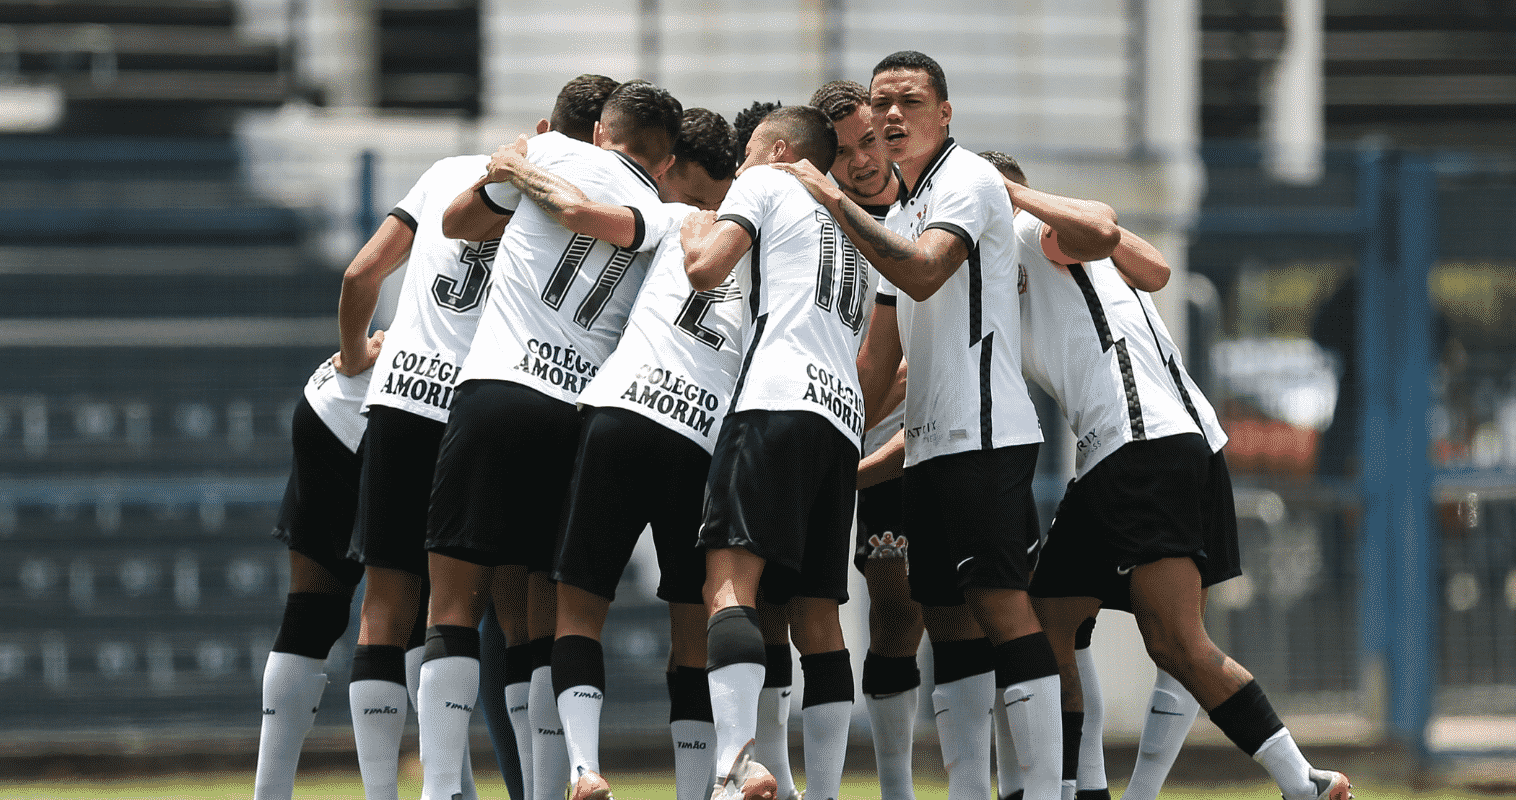 Corinthians Sub-20 terá reforço de Giovane e Wesley para reta final do  Brasileirão - TIMÃONET